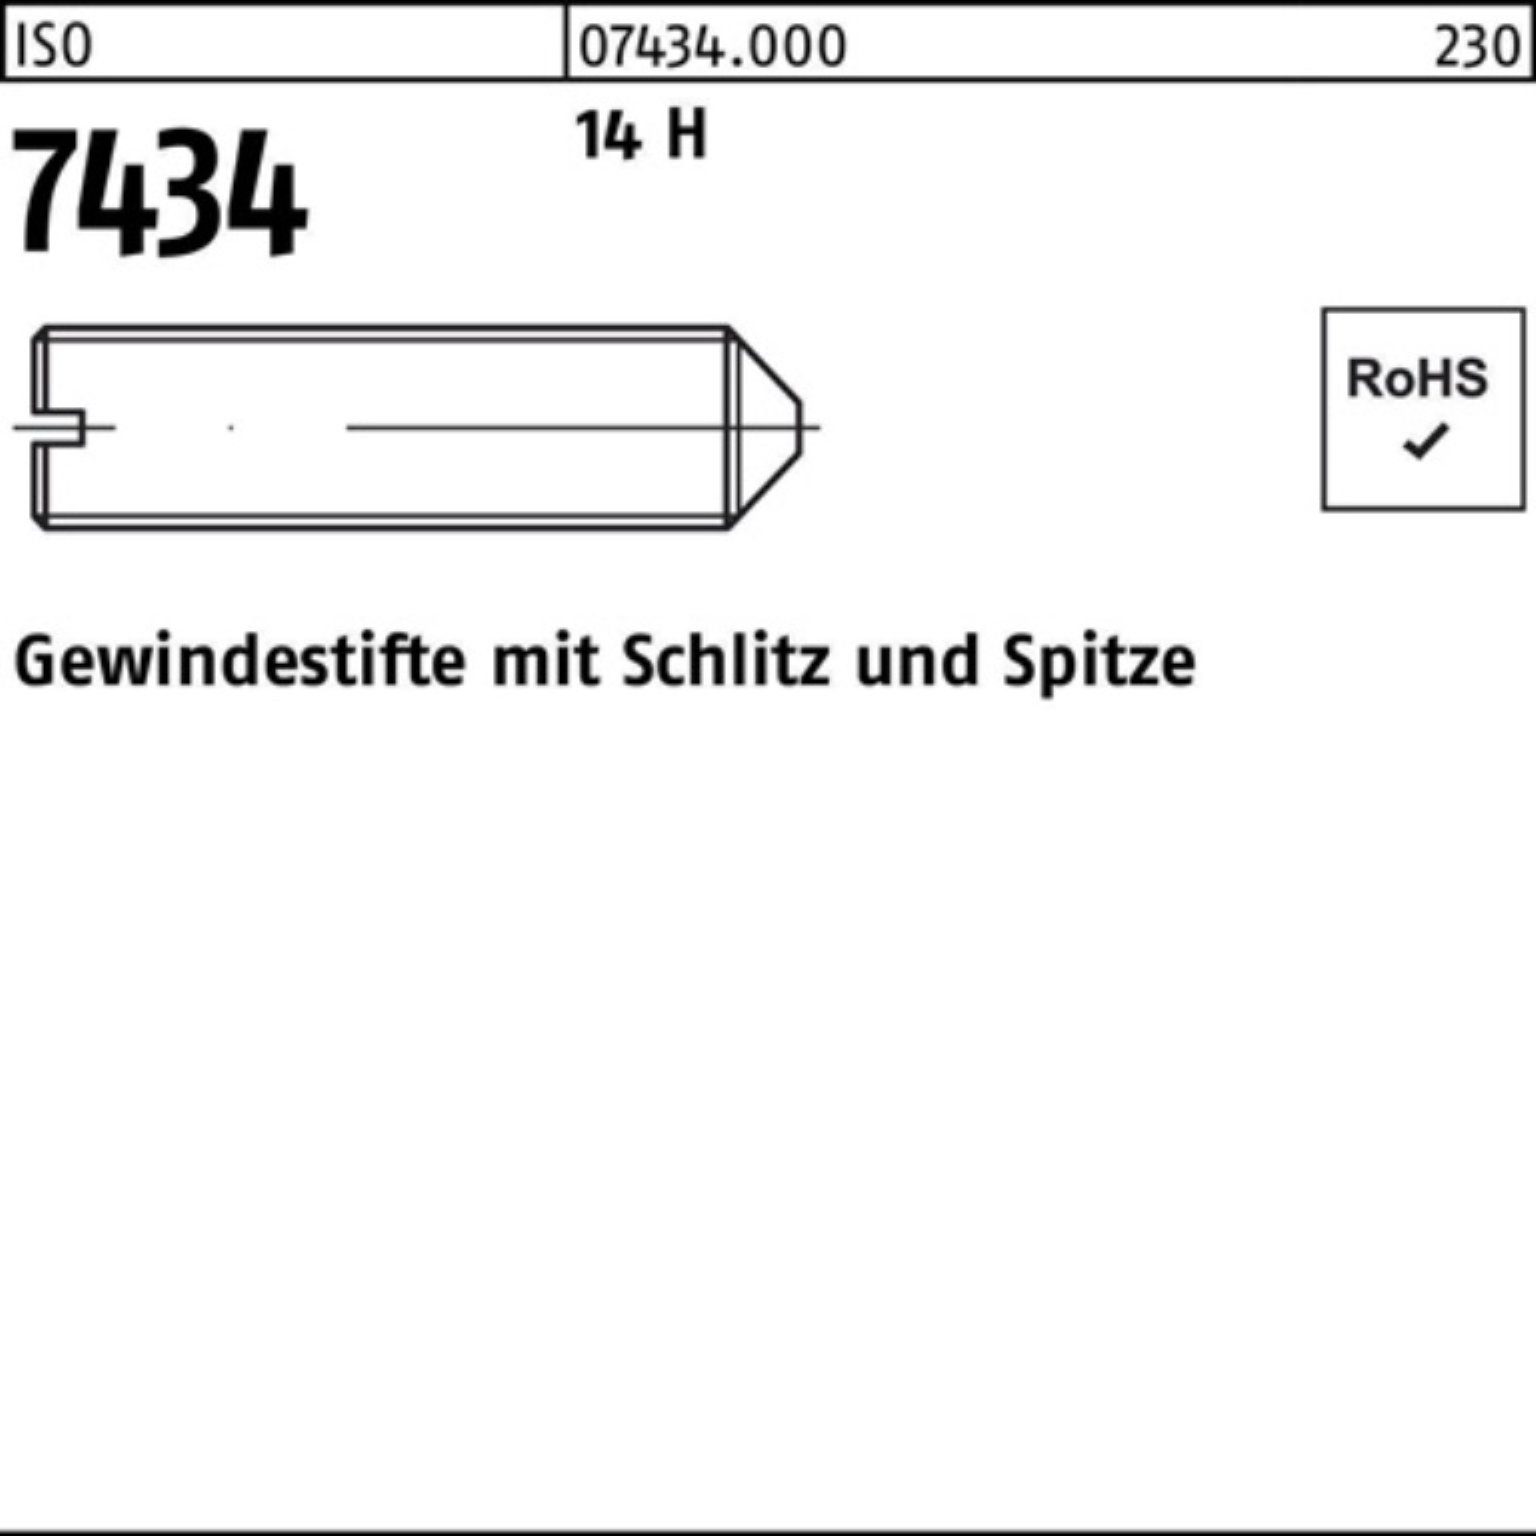 14 200 M6x Gewindestift 10 Stück Pack Gewindebolzen H 7434 200er ISO Spitze/Schlitz Reyher